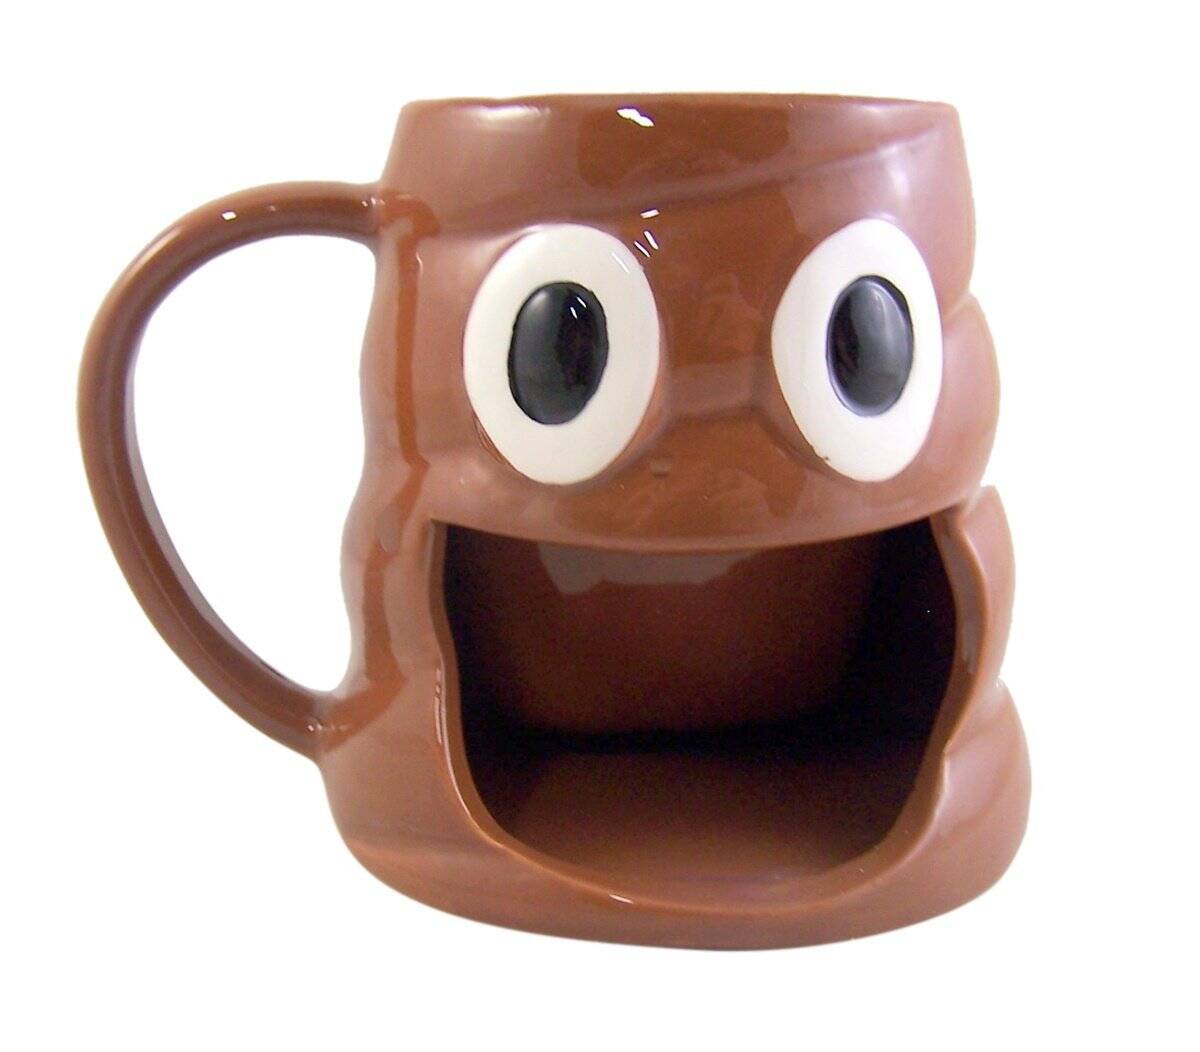 Poop Emoji Coffee Mug with Cookie Holder - coolthings.us